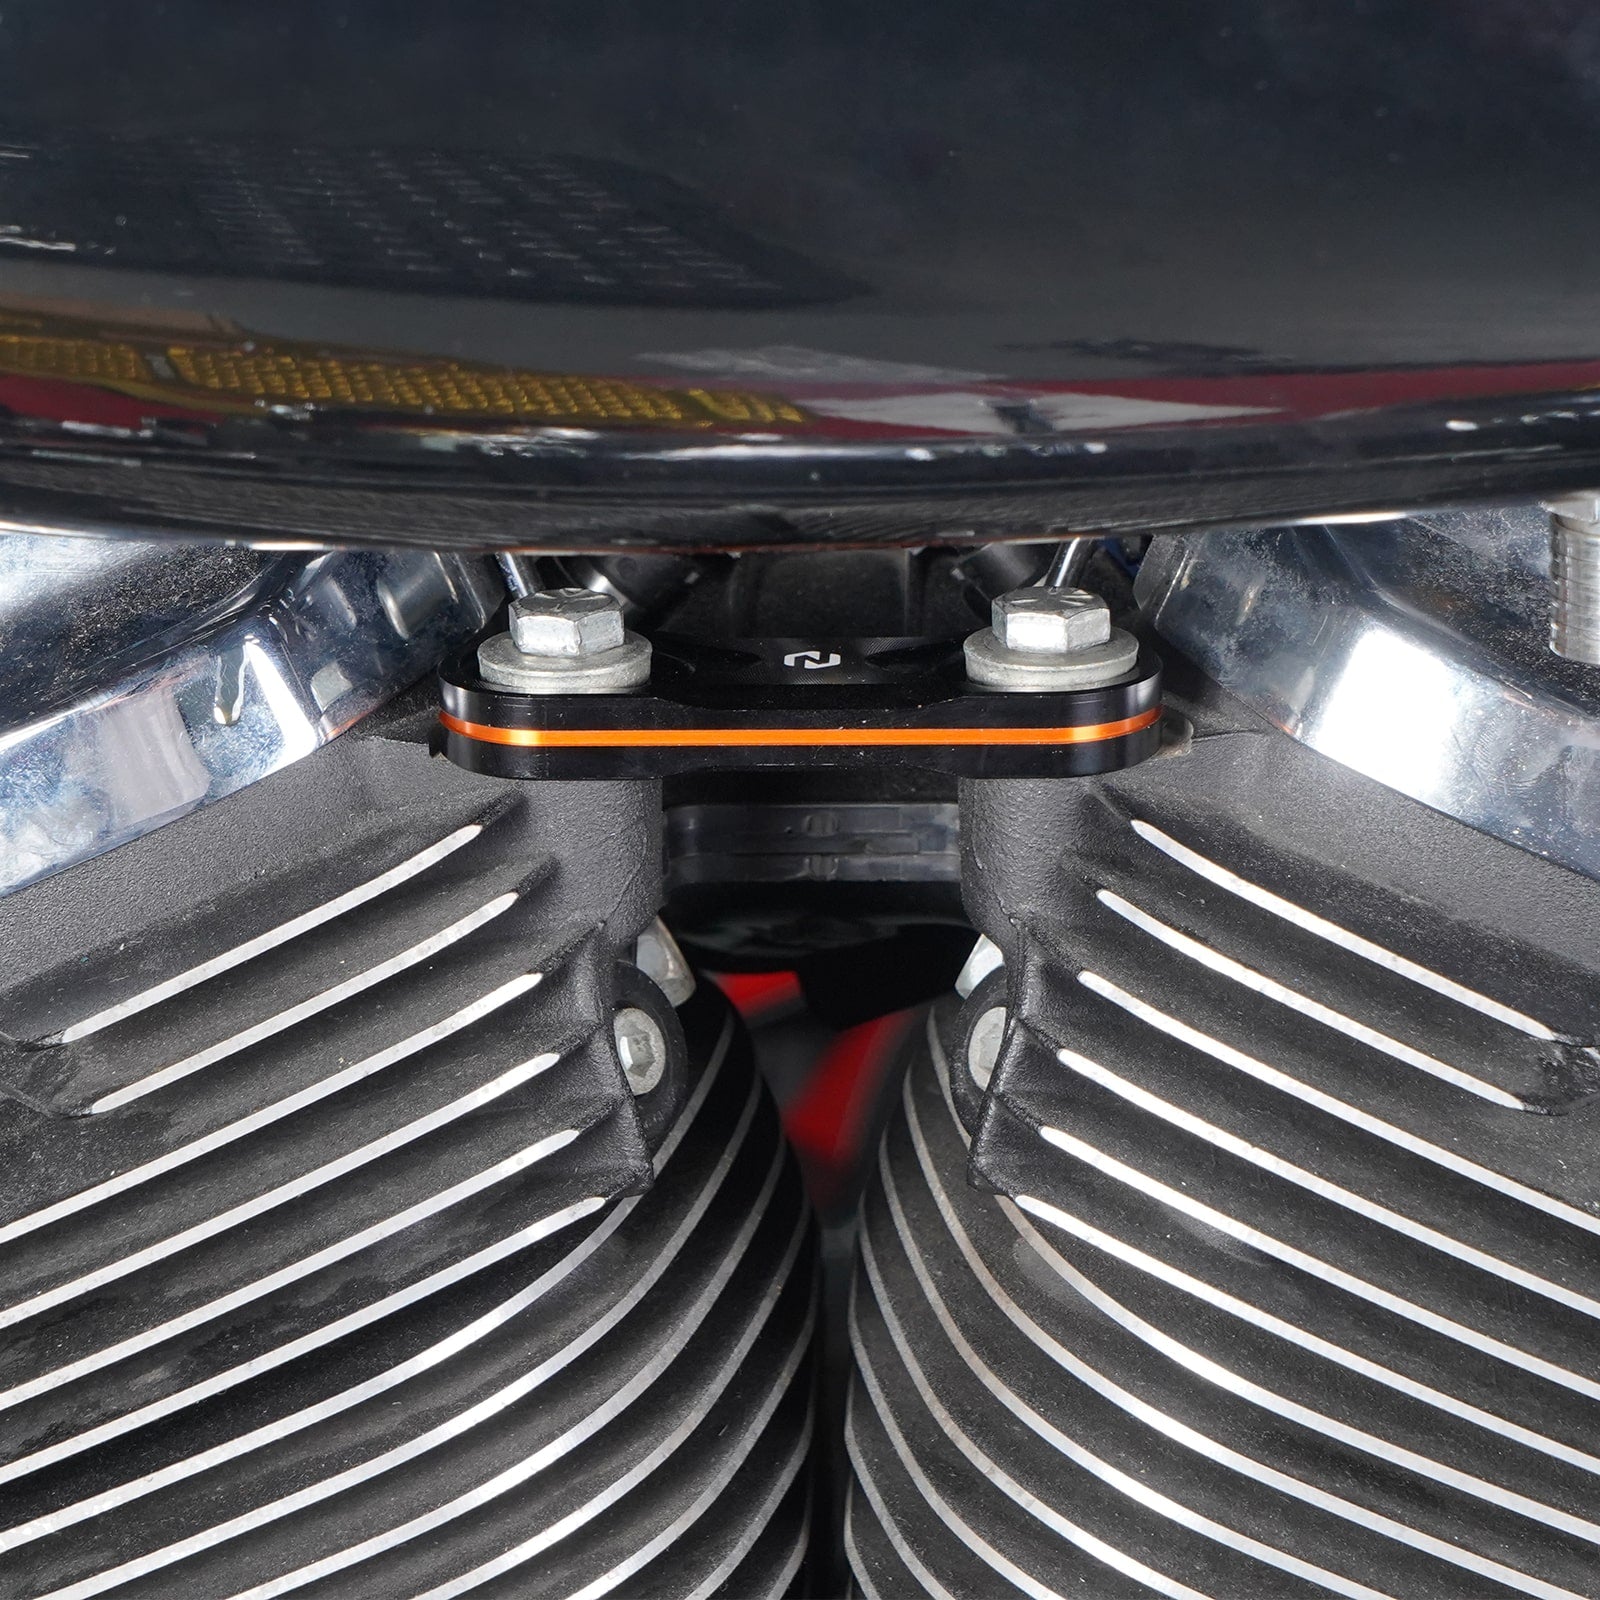 Horn Relocation Delete Kit for Harley Davidson M8 Engine Touring Models